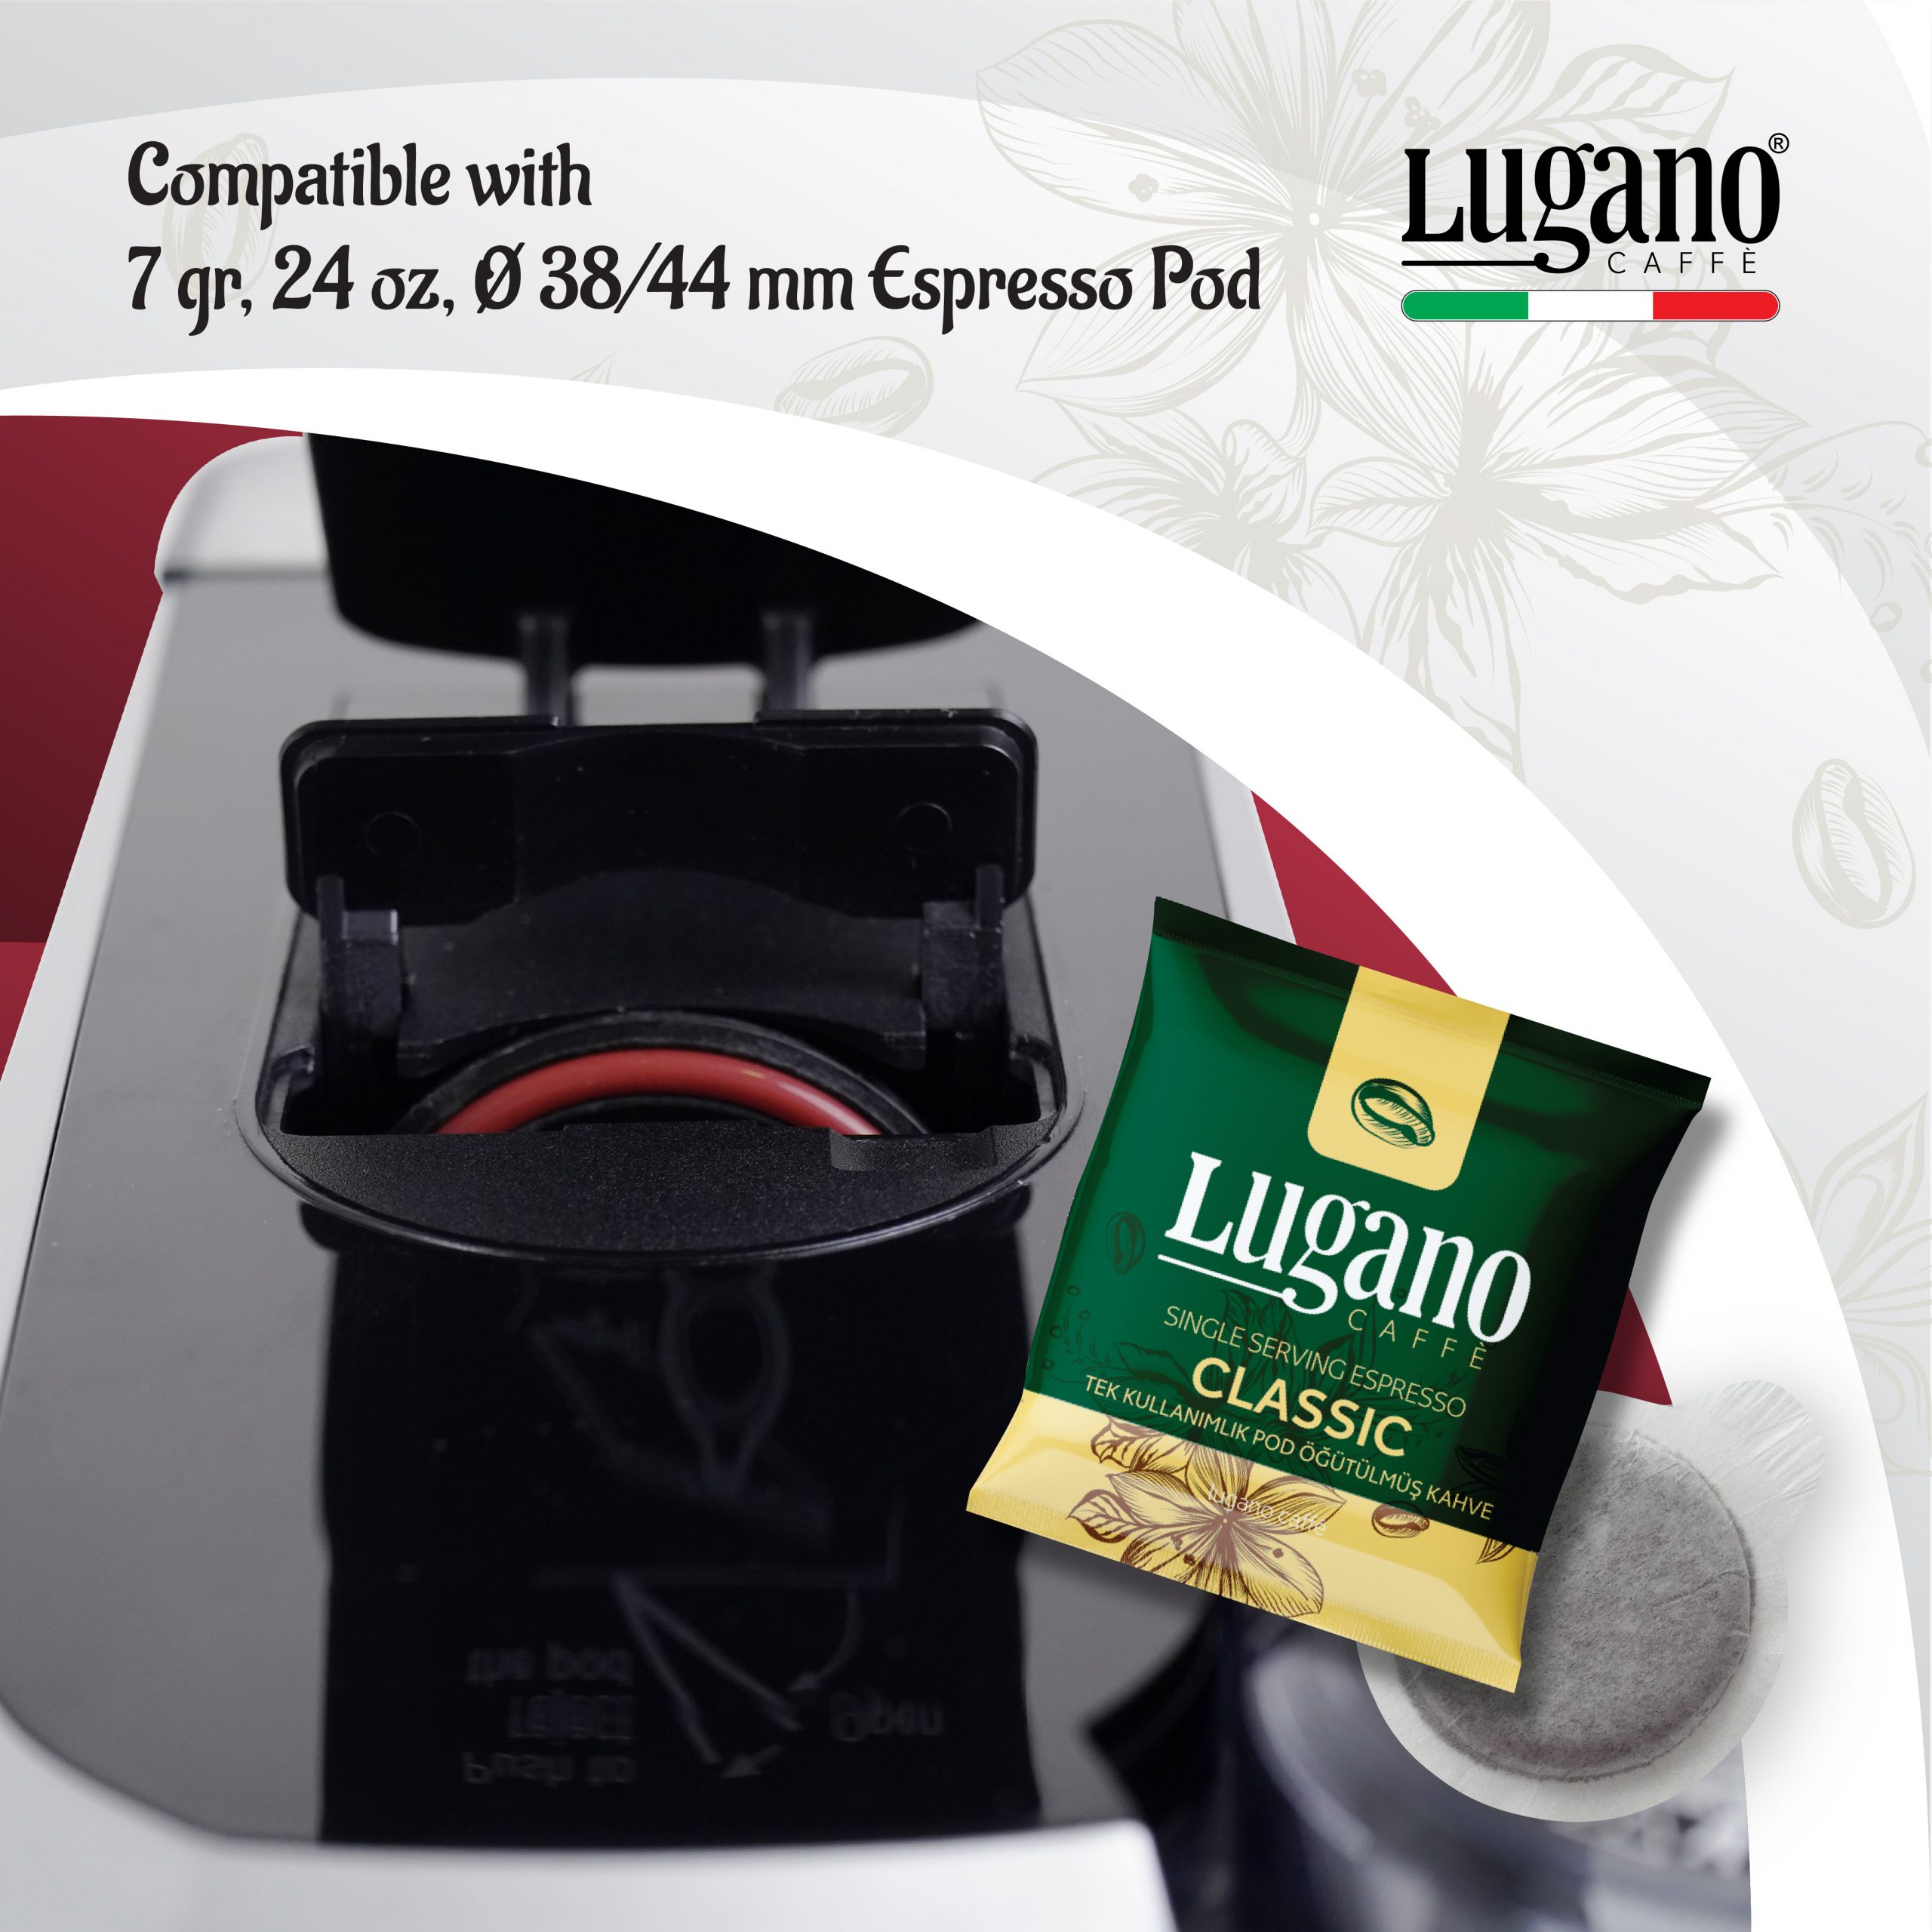 Lugnao Creativa Espresso Pod dimensions